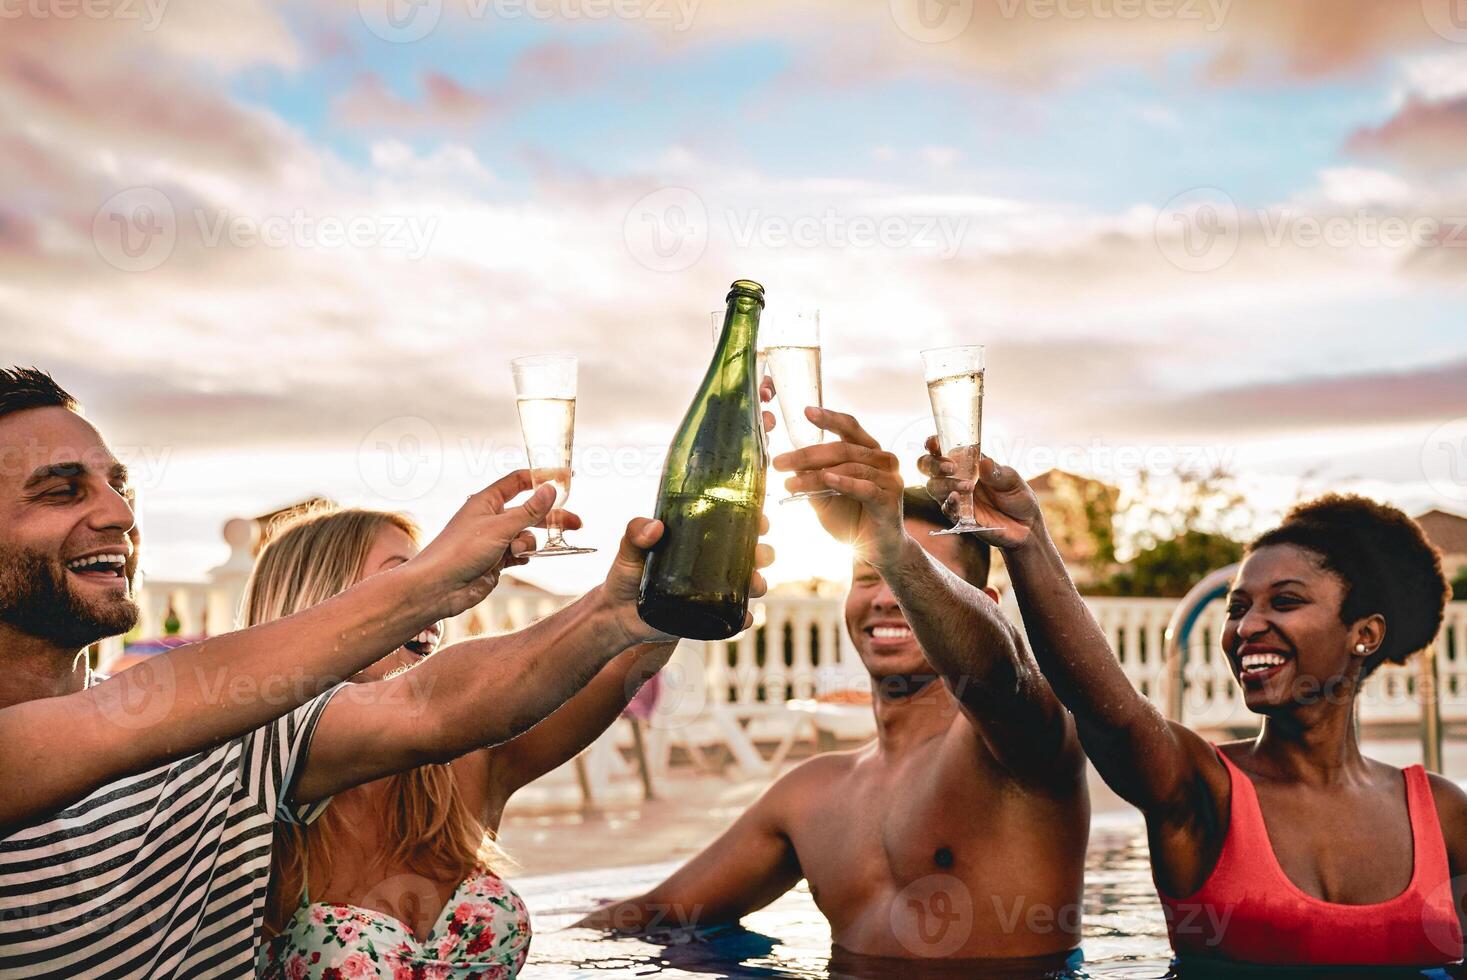 gelukkig vrienden aan het doen zwembad partij roosteren Champagne Bij zonsondergang - jong mensen hebben pret drinken sprankelend wijn in luxe tropisch strand toevlucht - vakantie, vakantie, zomer en jeugd levensstijl concept foto